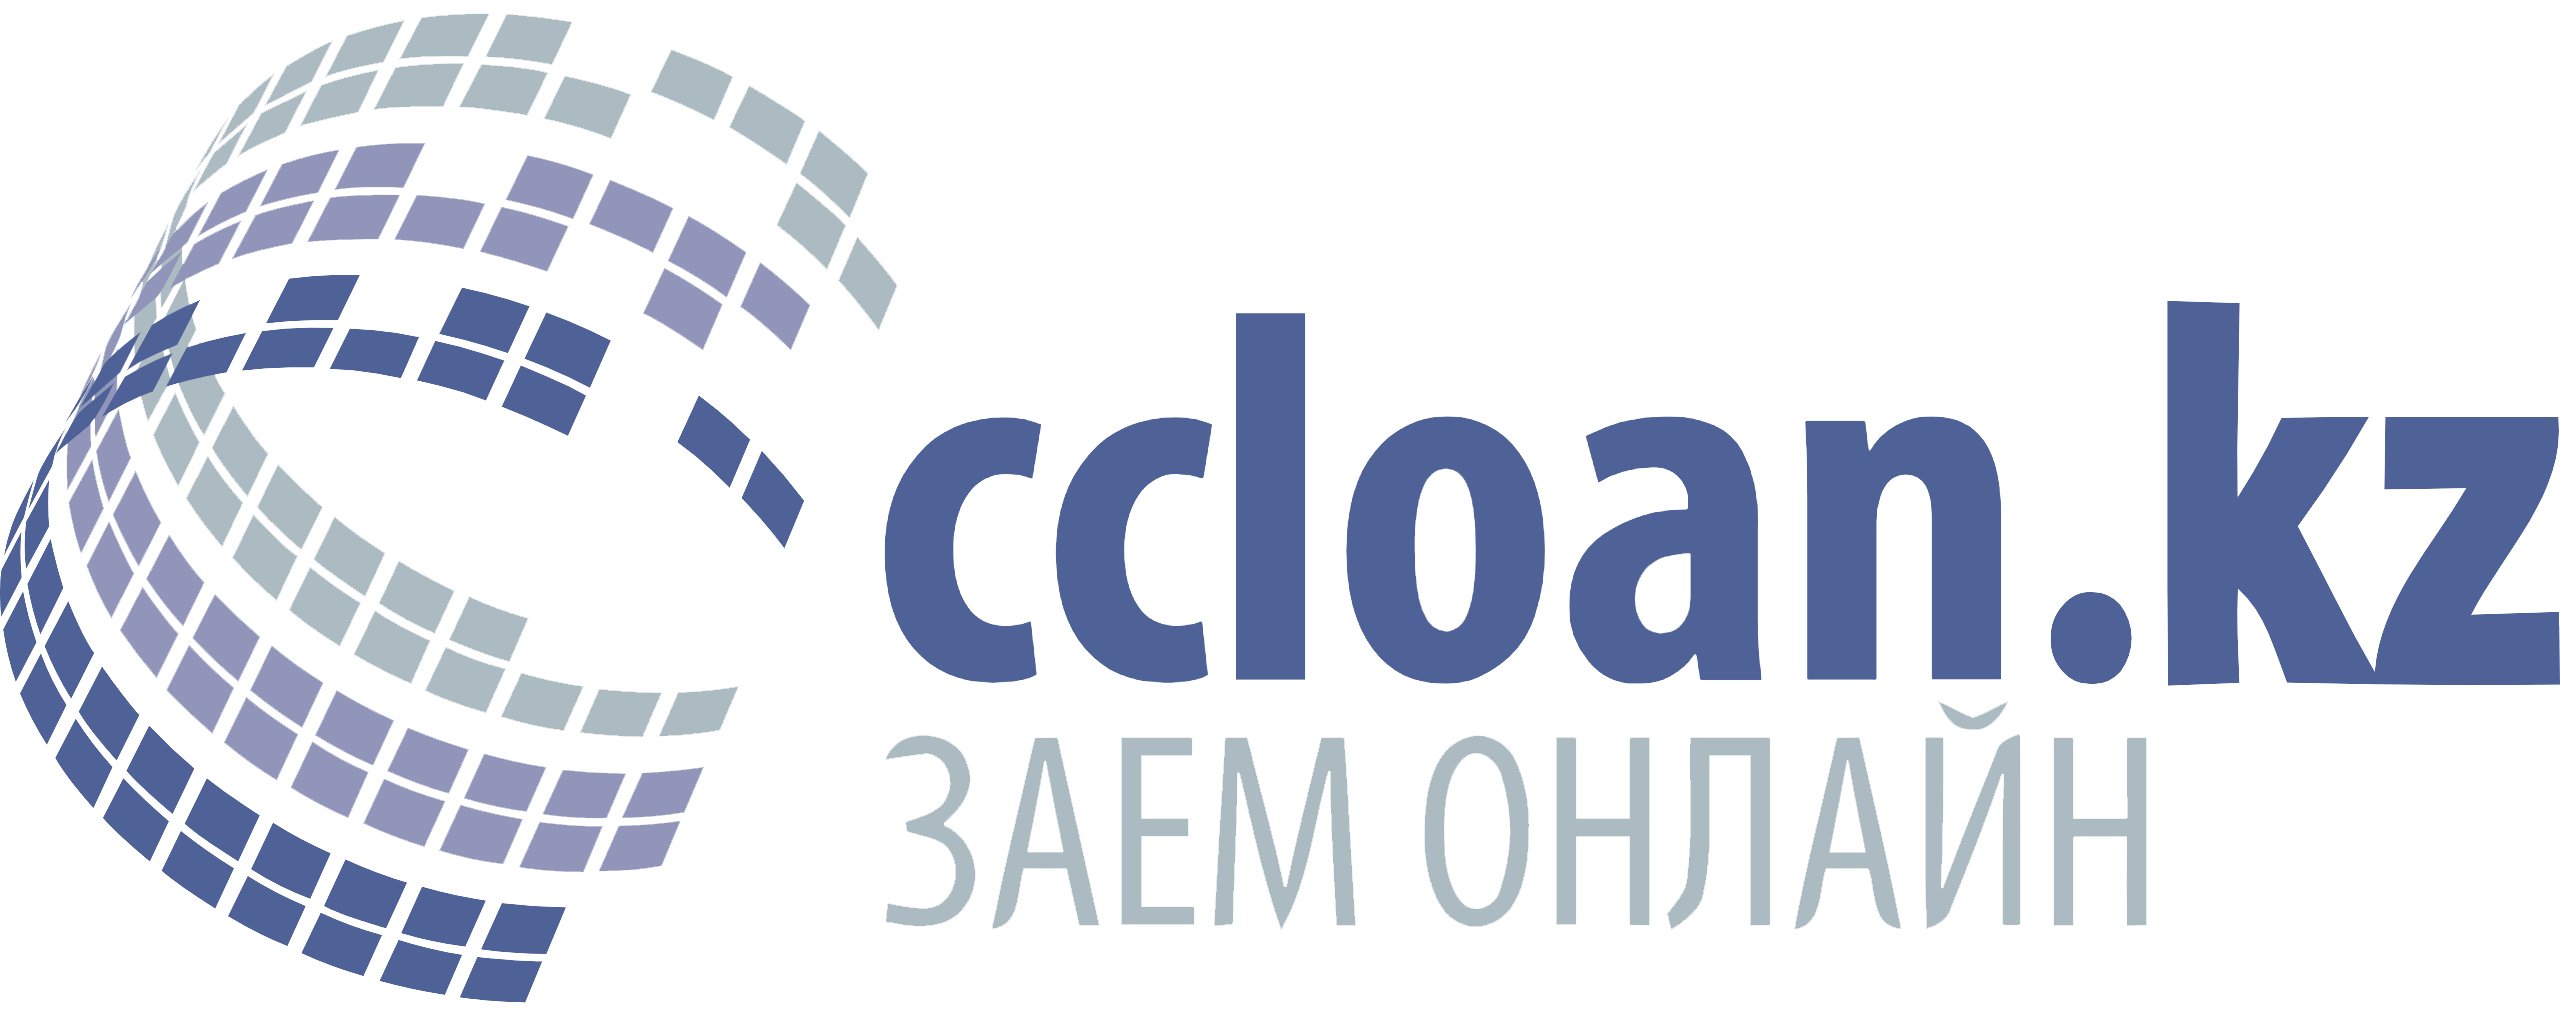 Логотип Микрофинансовой организации МФО Ccloan: долгосрочный онлайн микрозайм